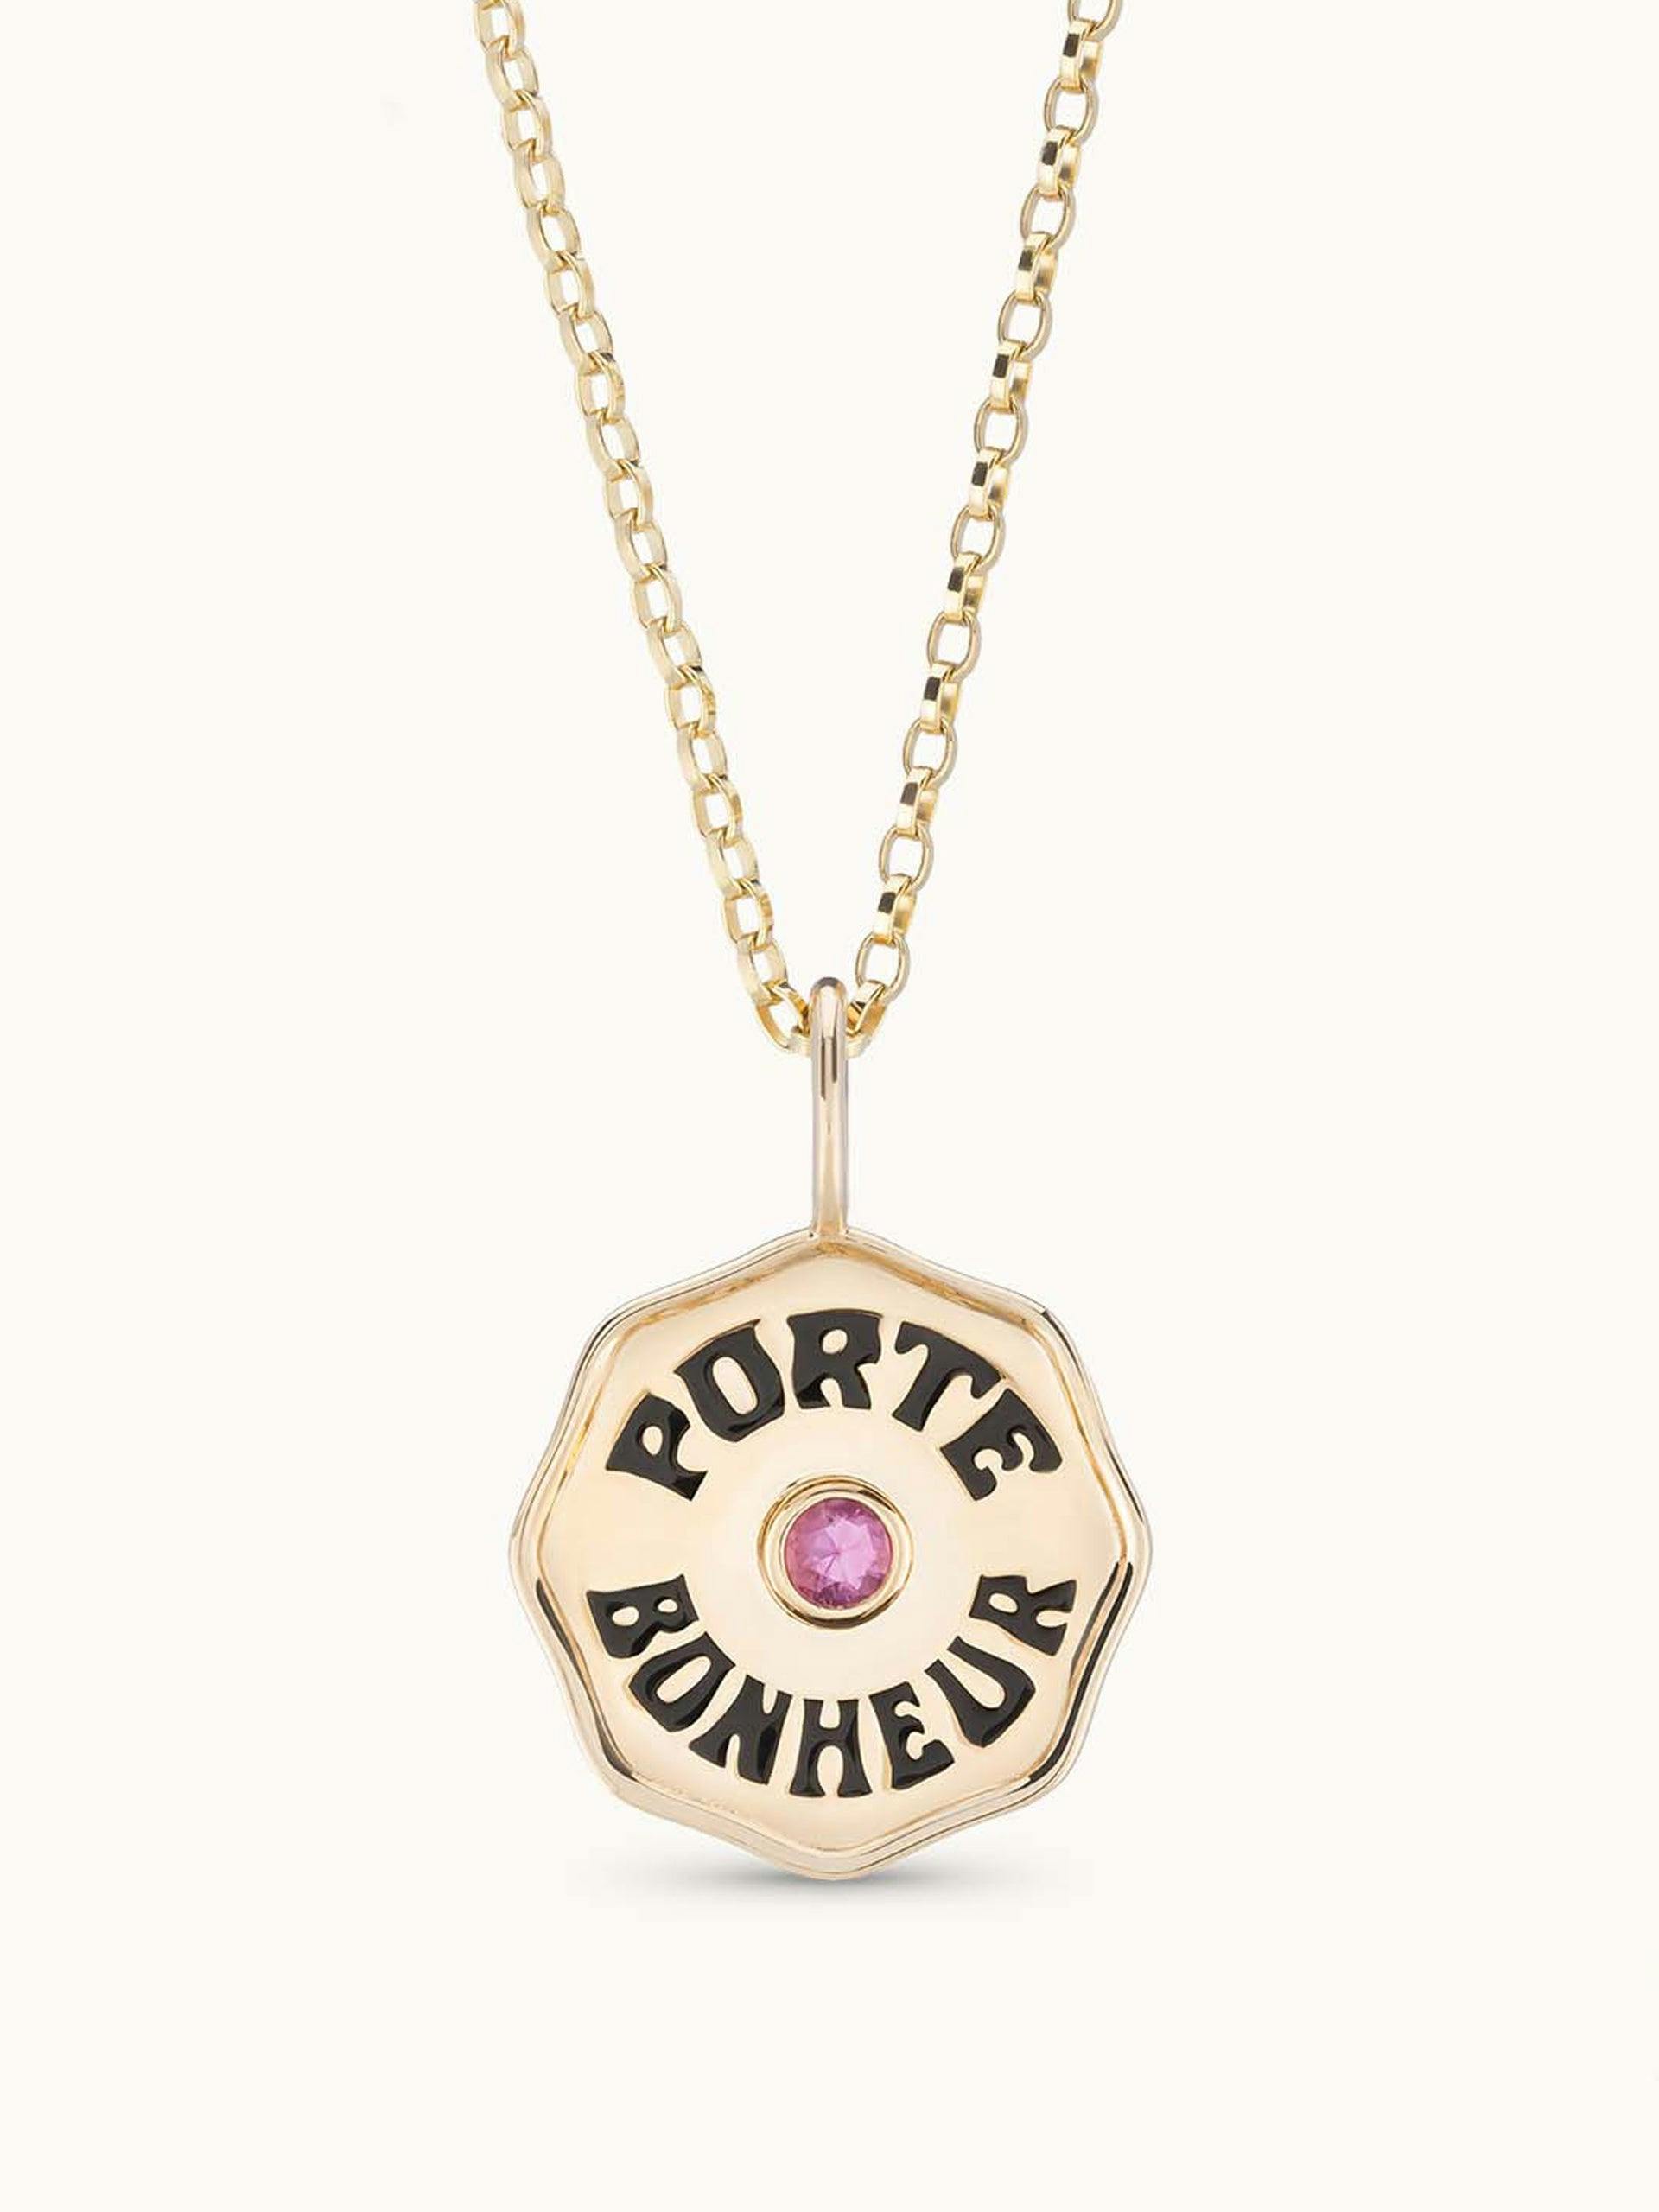 Mini Porte Bonheur necklace with pink sapphire